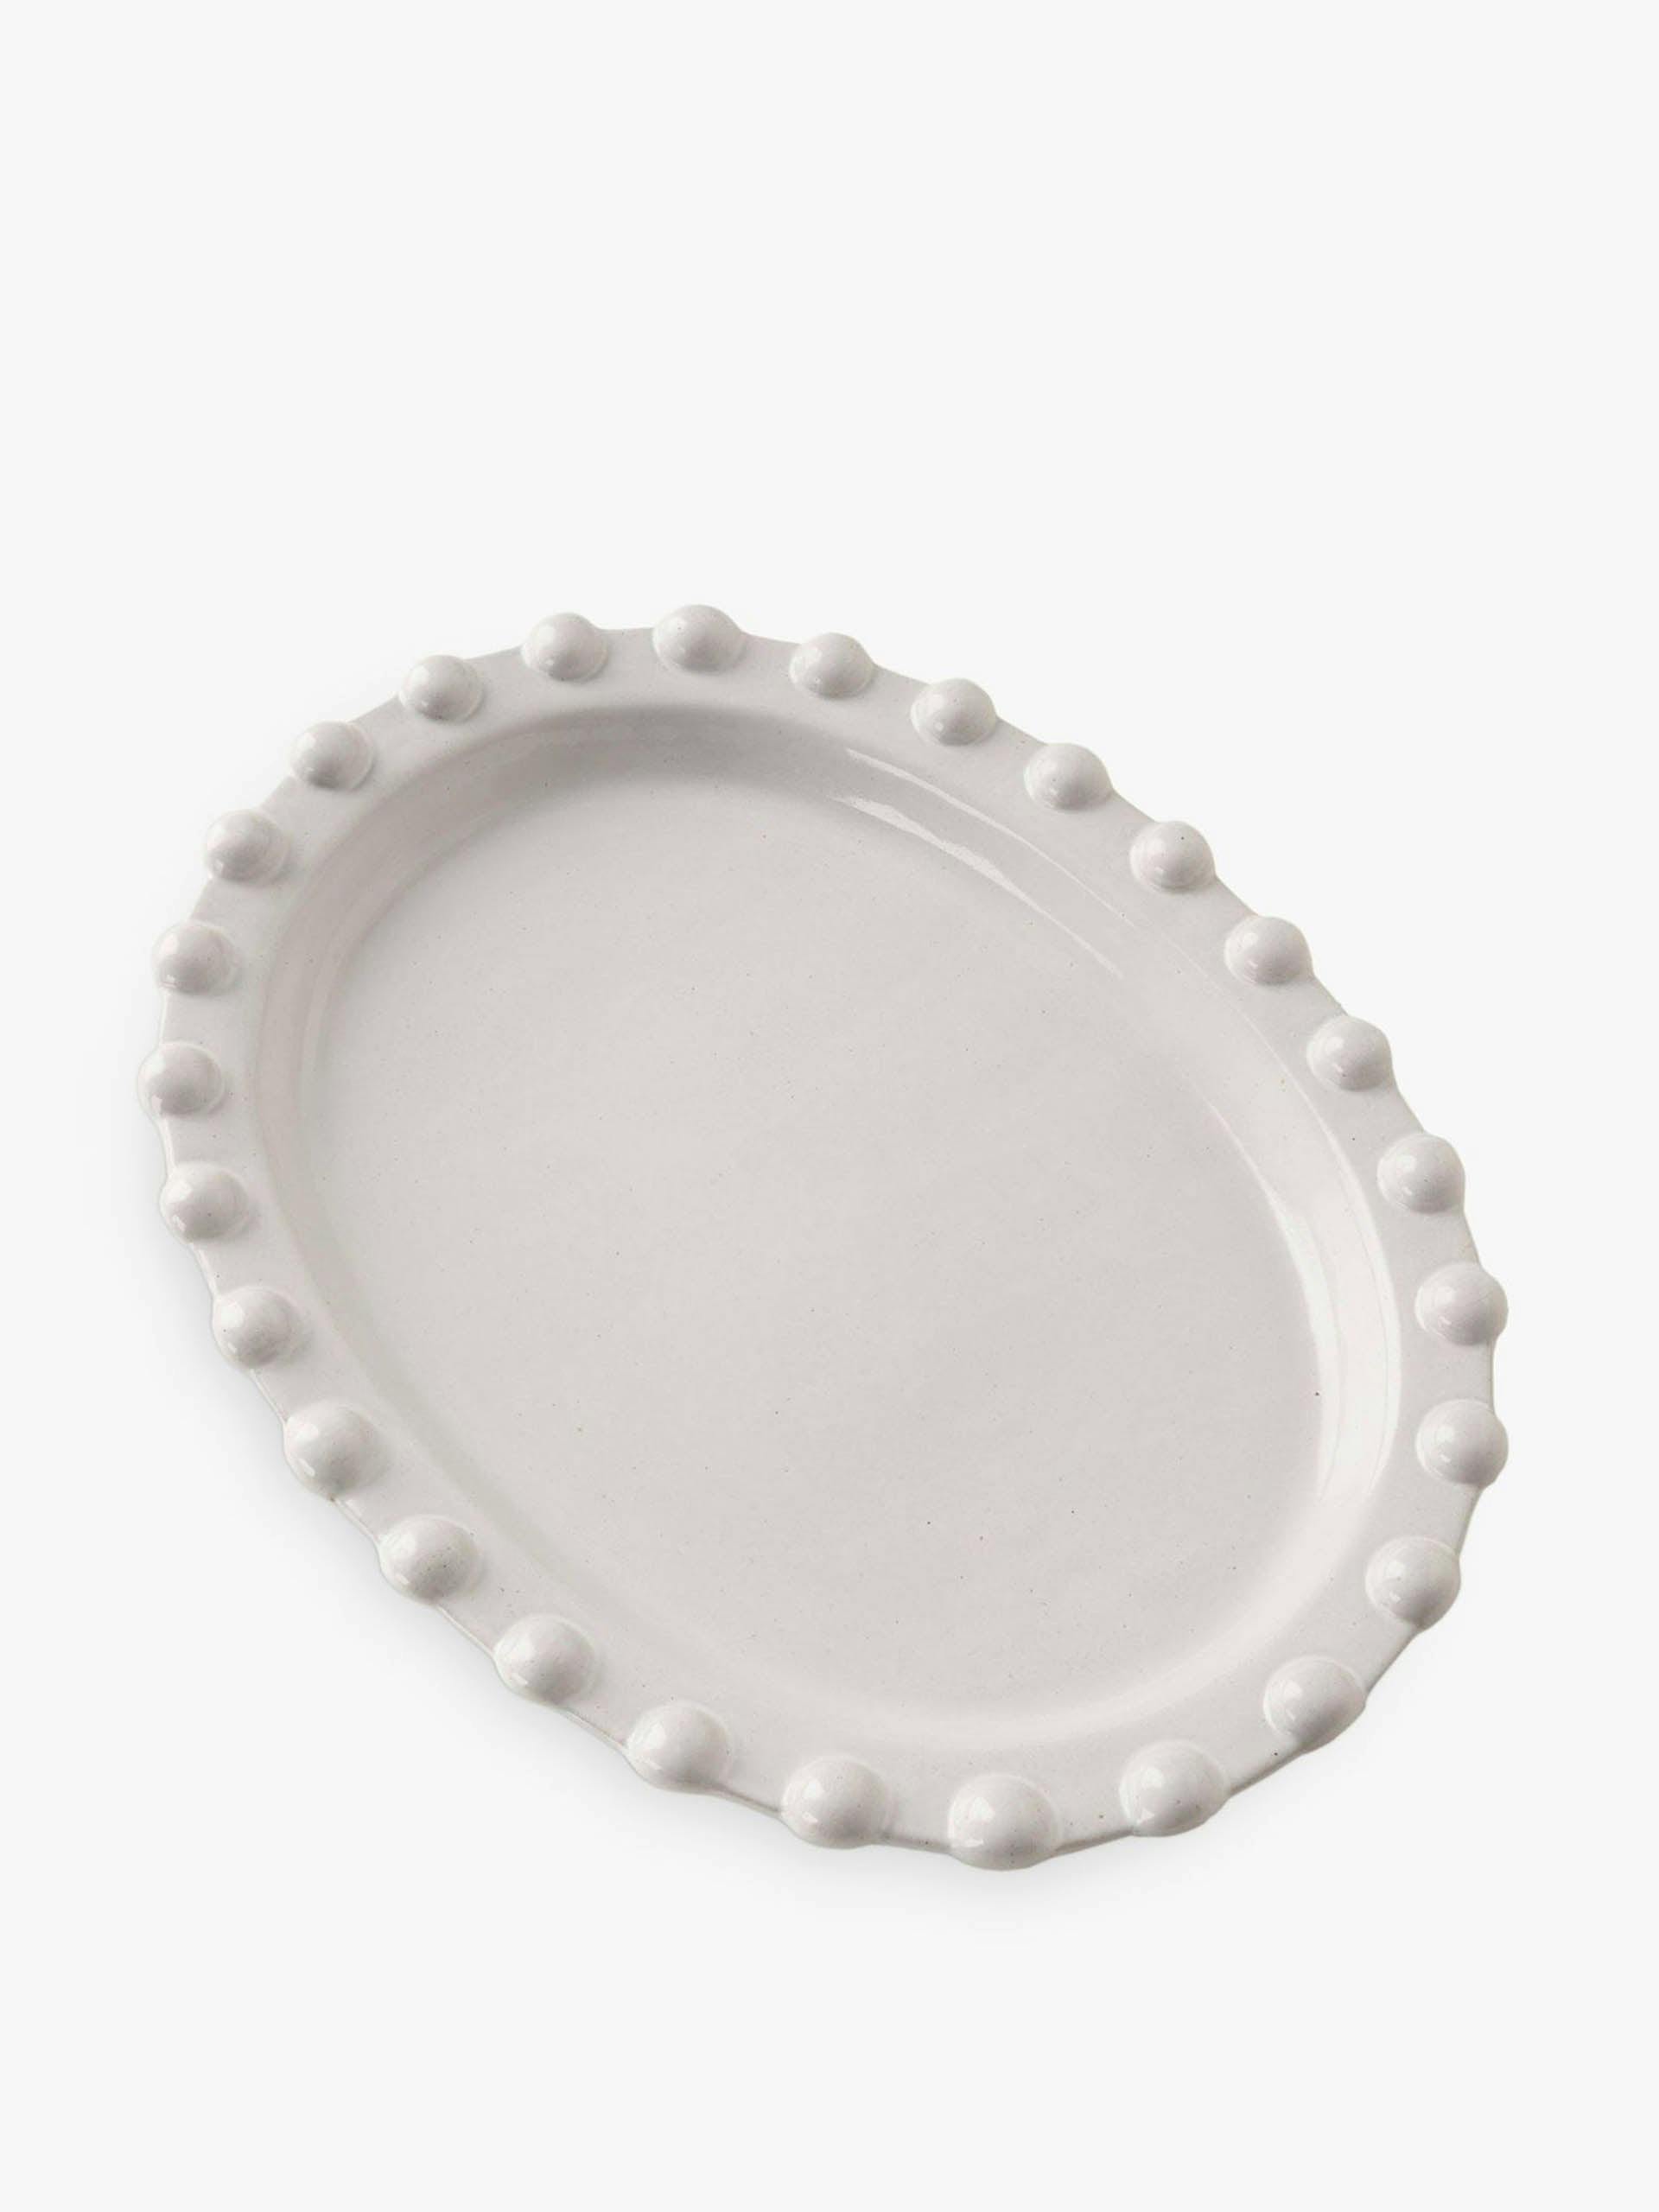 Pale grey oval serving platter